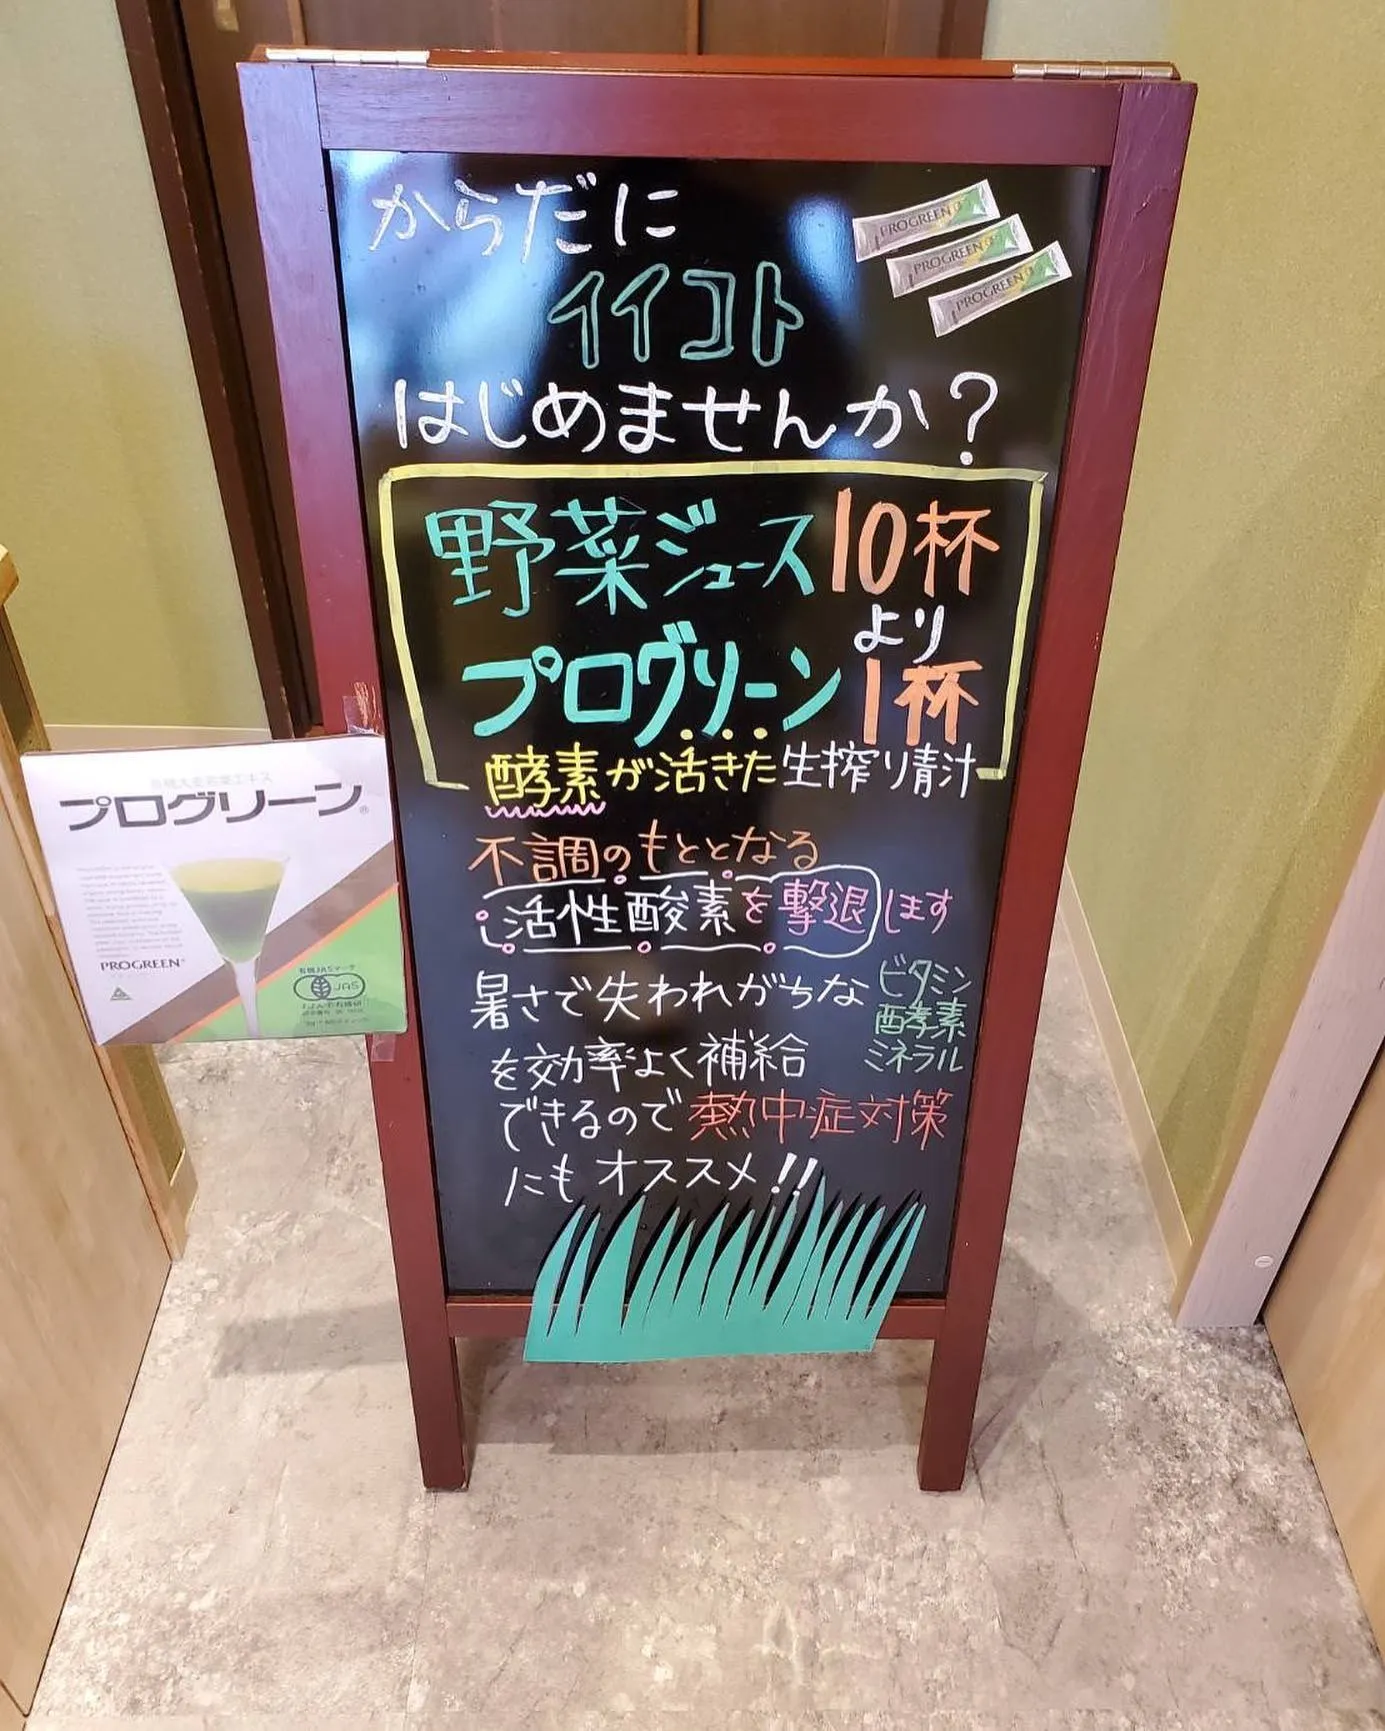 ポニー薬局栄店では8月1日〜8月31日まで【青汁祭り】を開催...